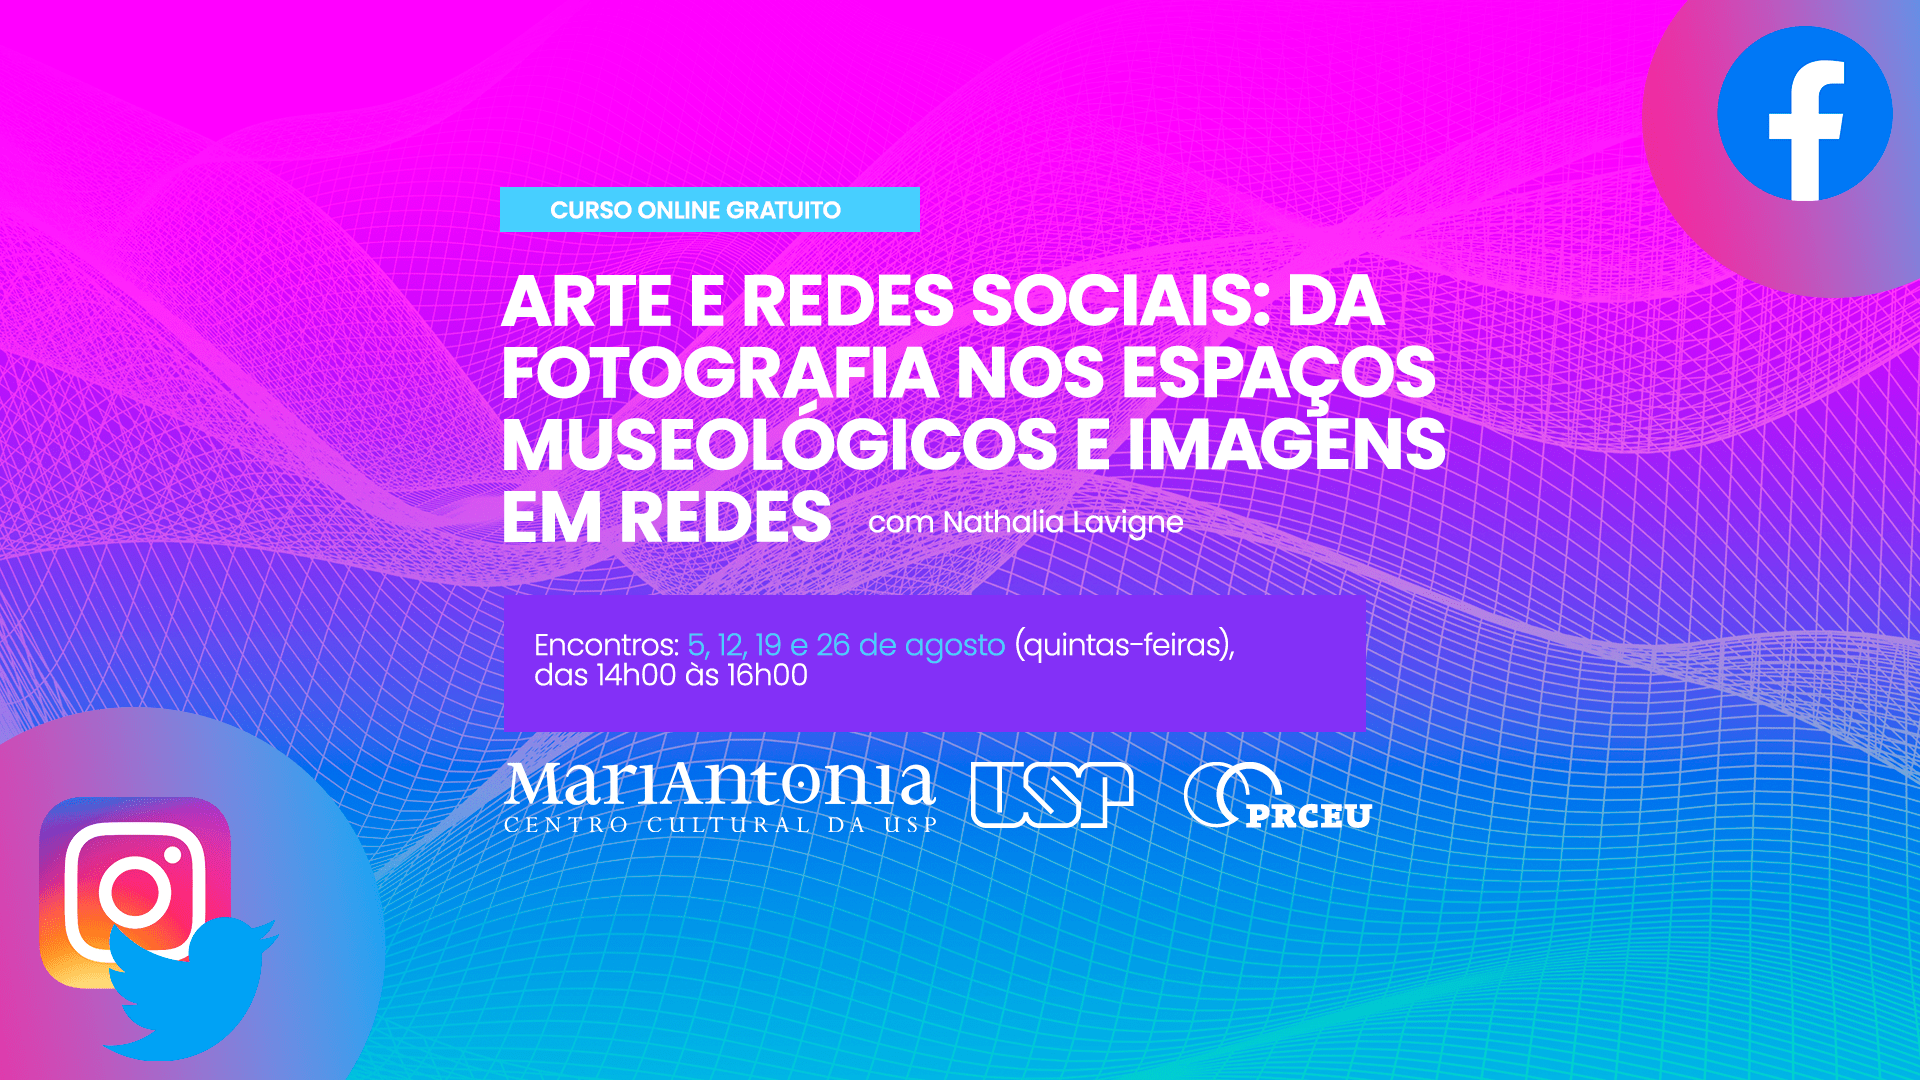 (Português) Circulação de imagens de arte nas redes sociais é tema de curso gratuito online